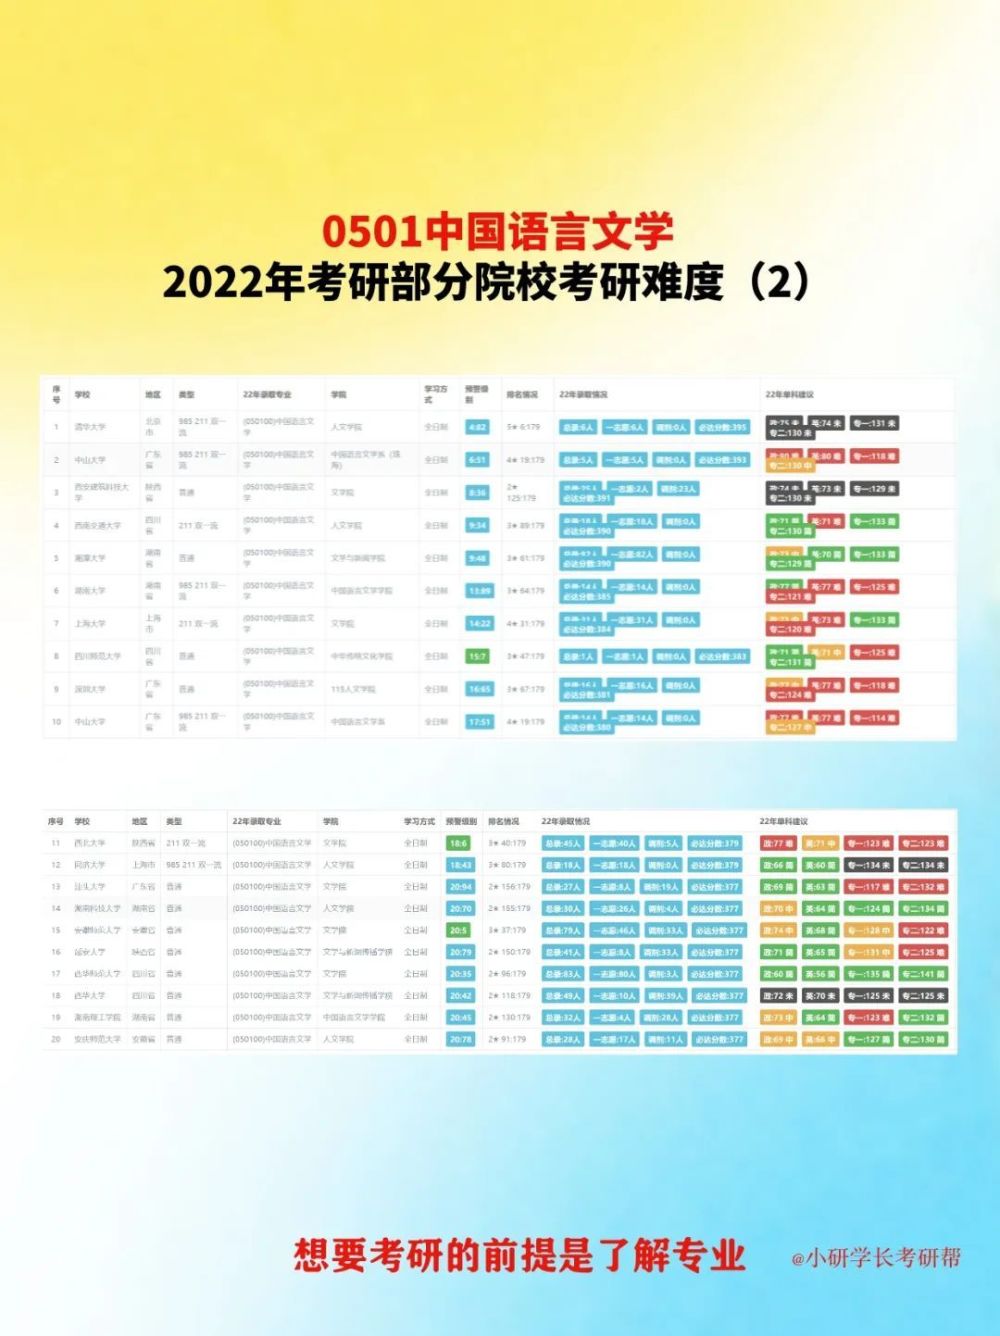 考研方向丨中国语言文学类考研方向(2023己更新)插图6